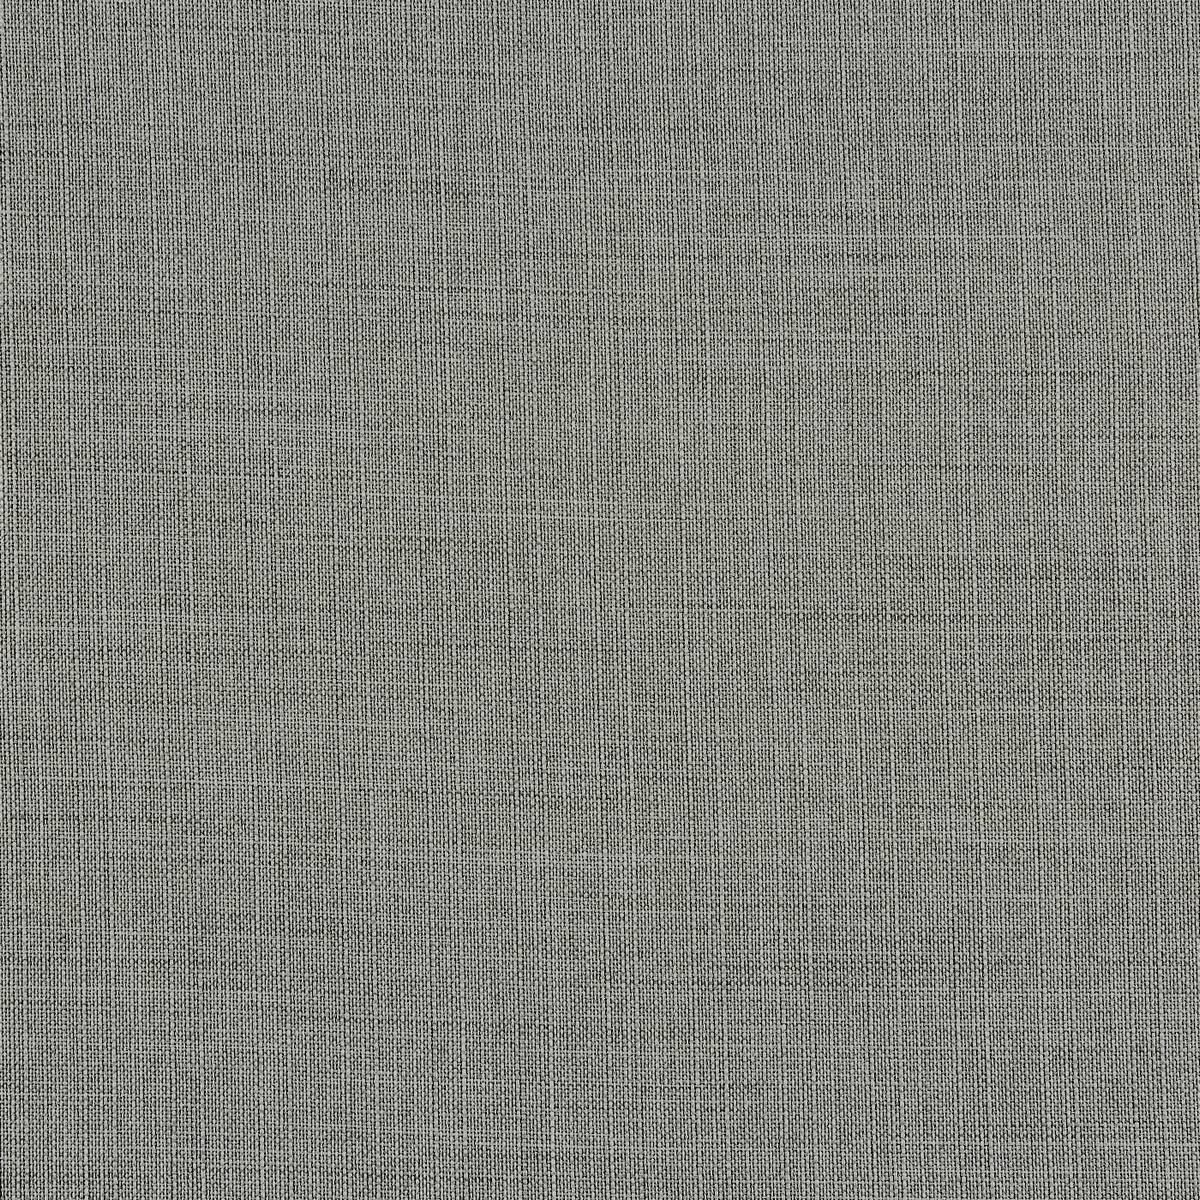 Franklin Dove Fabric by Prestigious Textiles